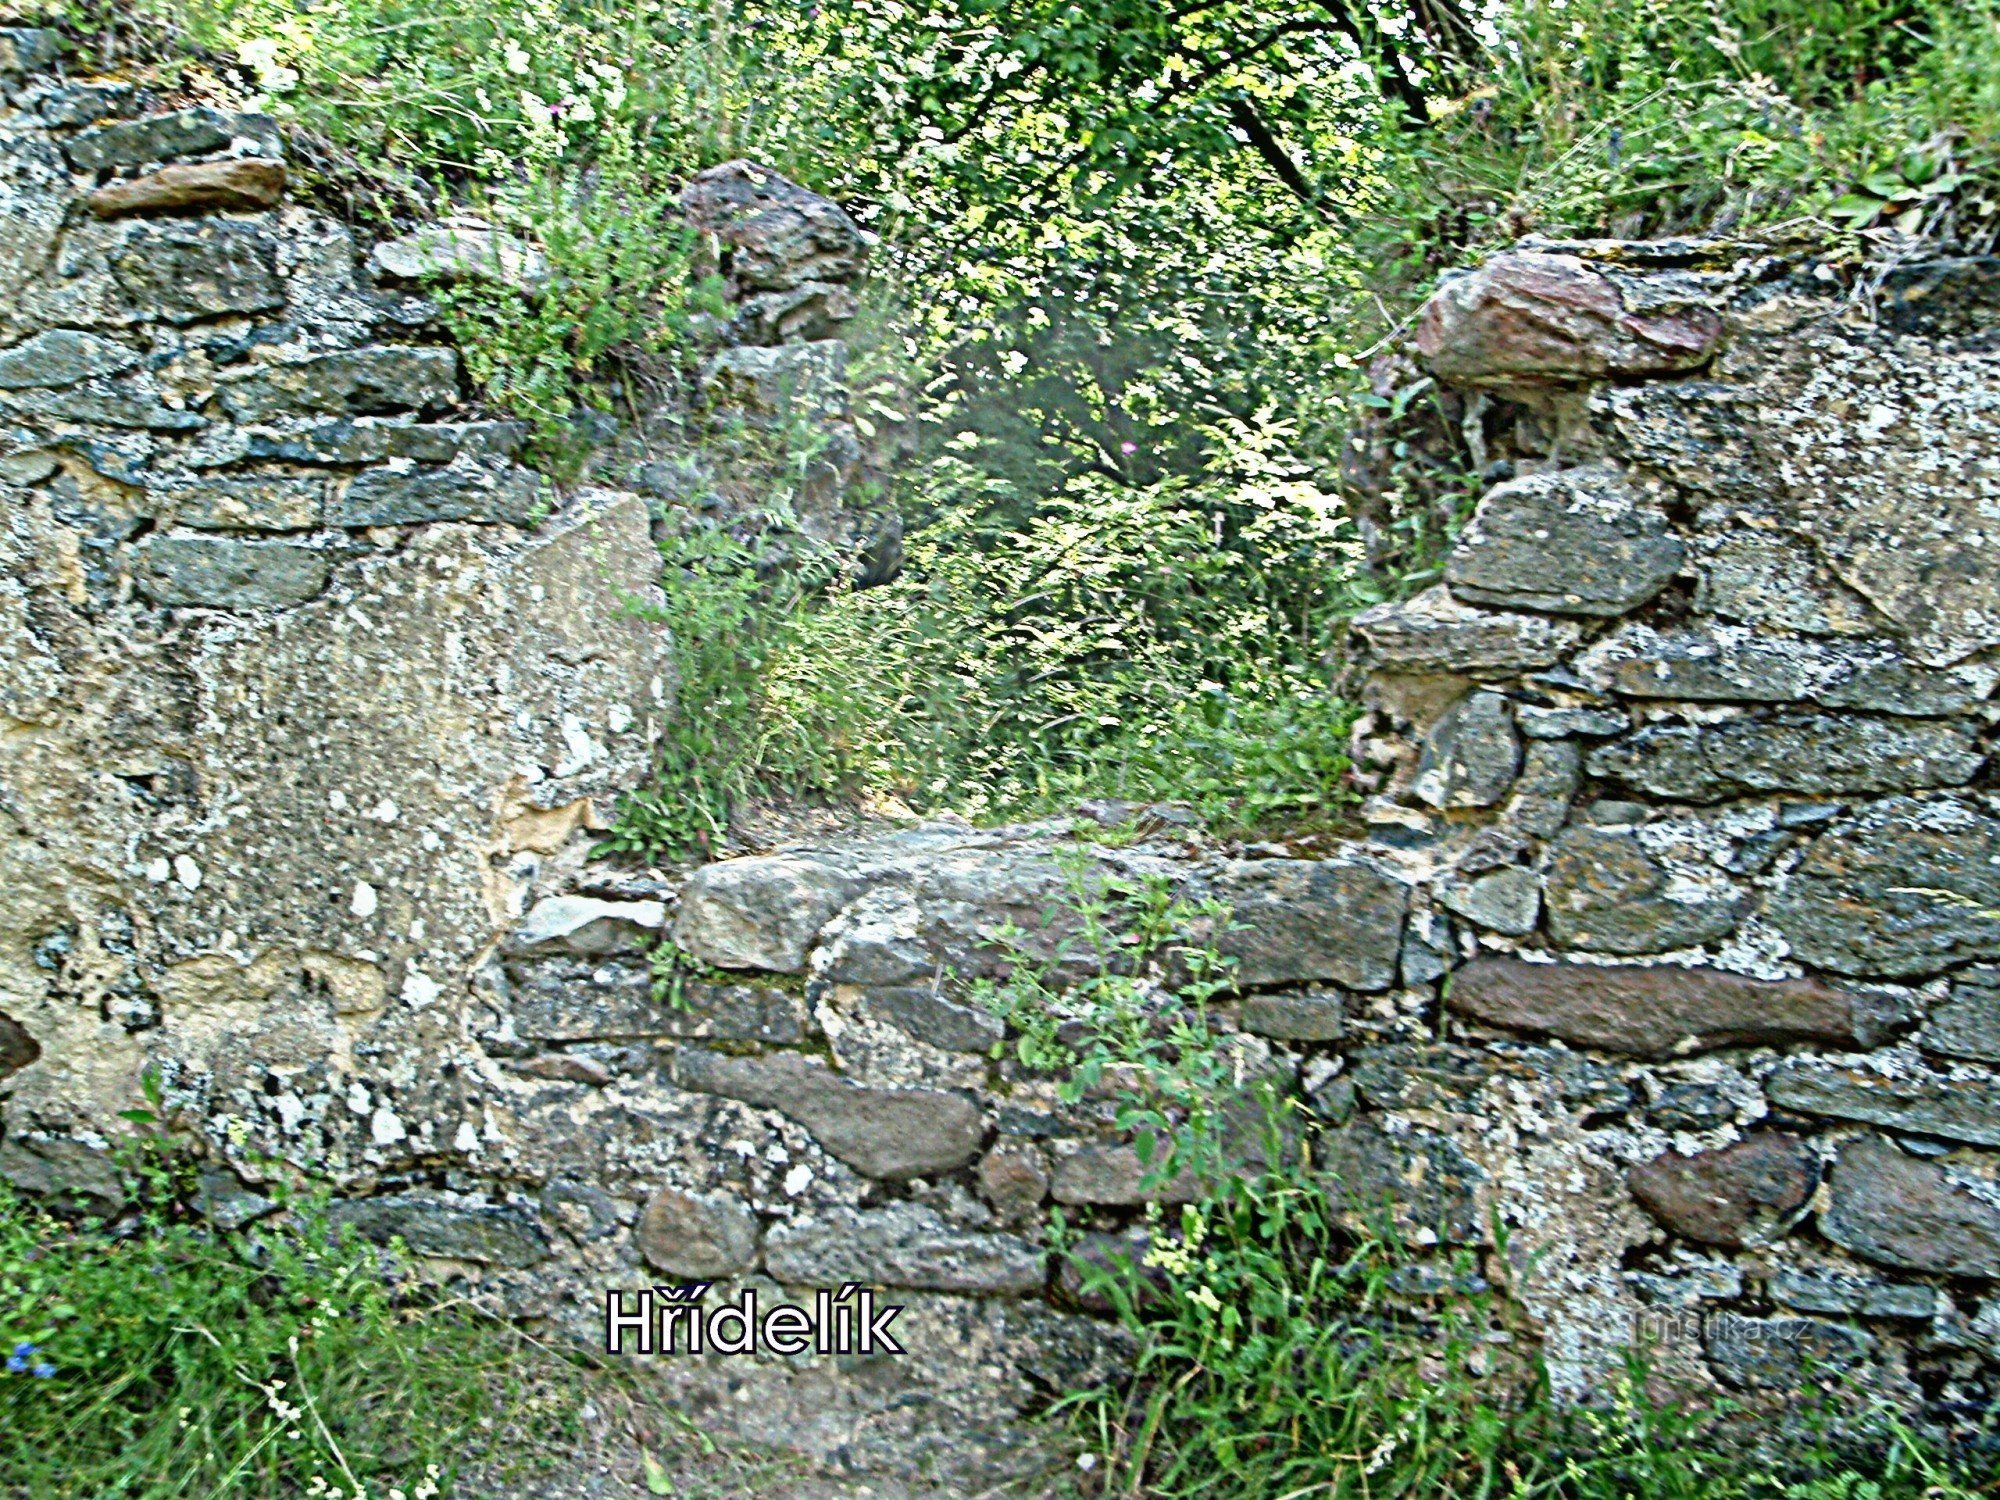 Blíževedly - ruševine dvorca Hřídelík